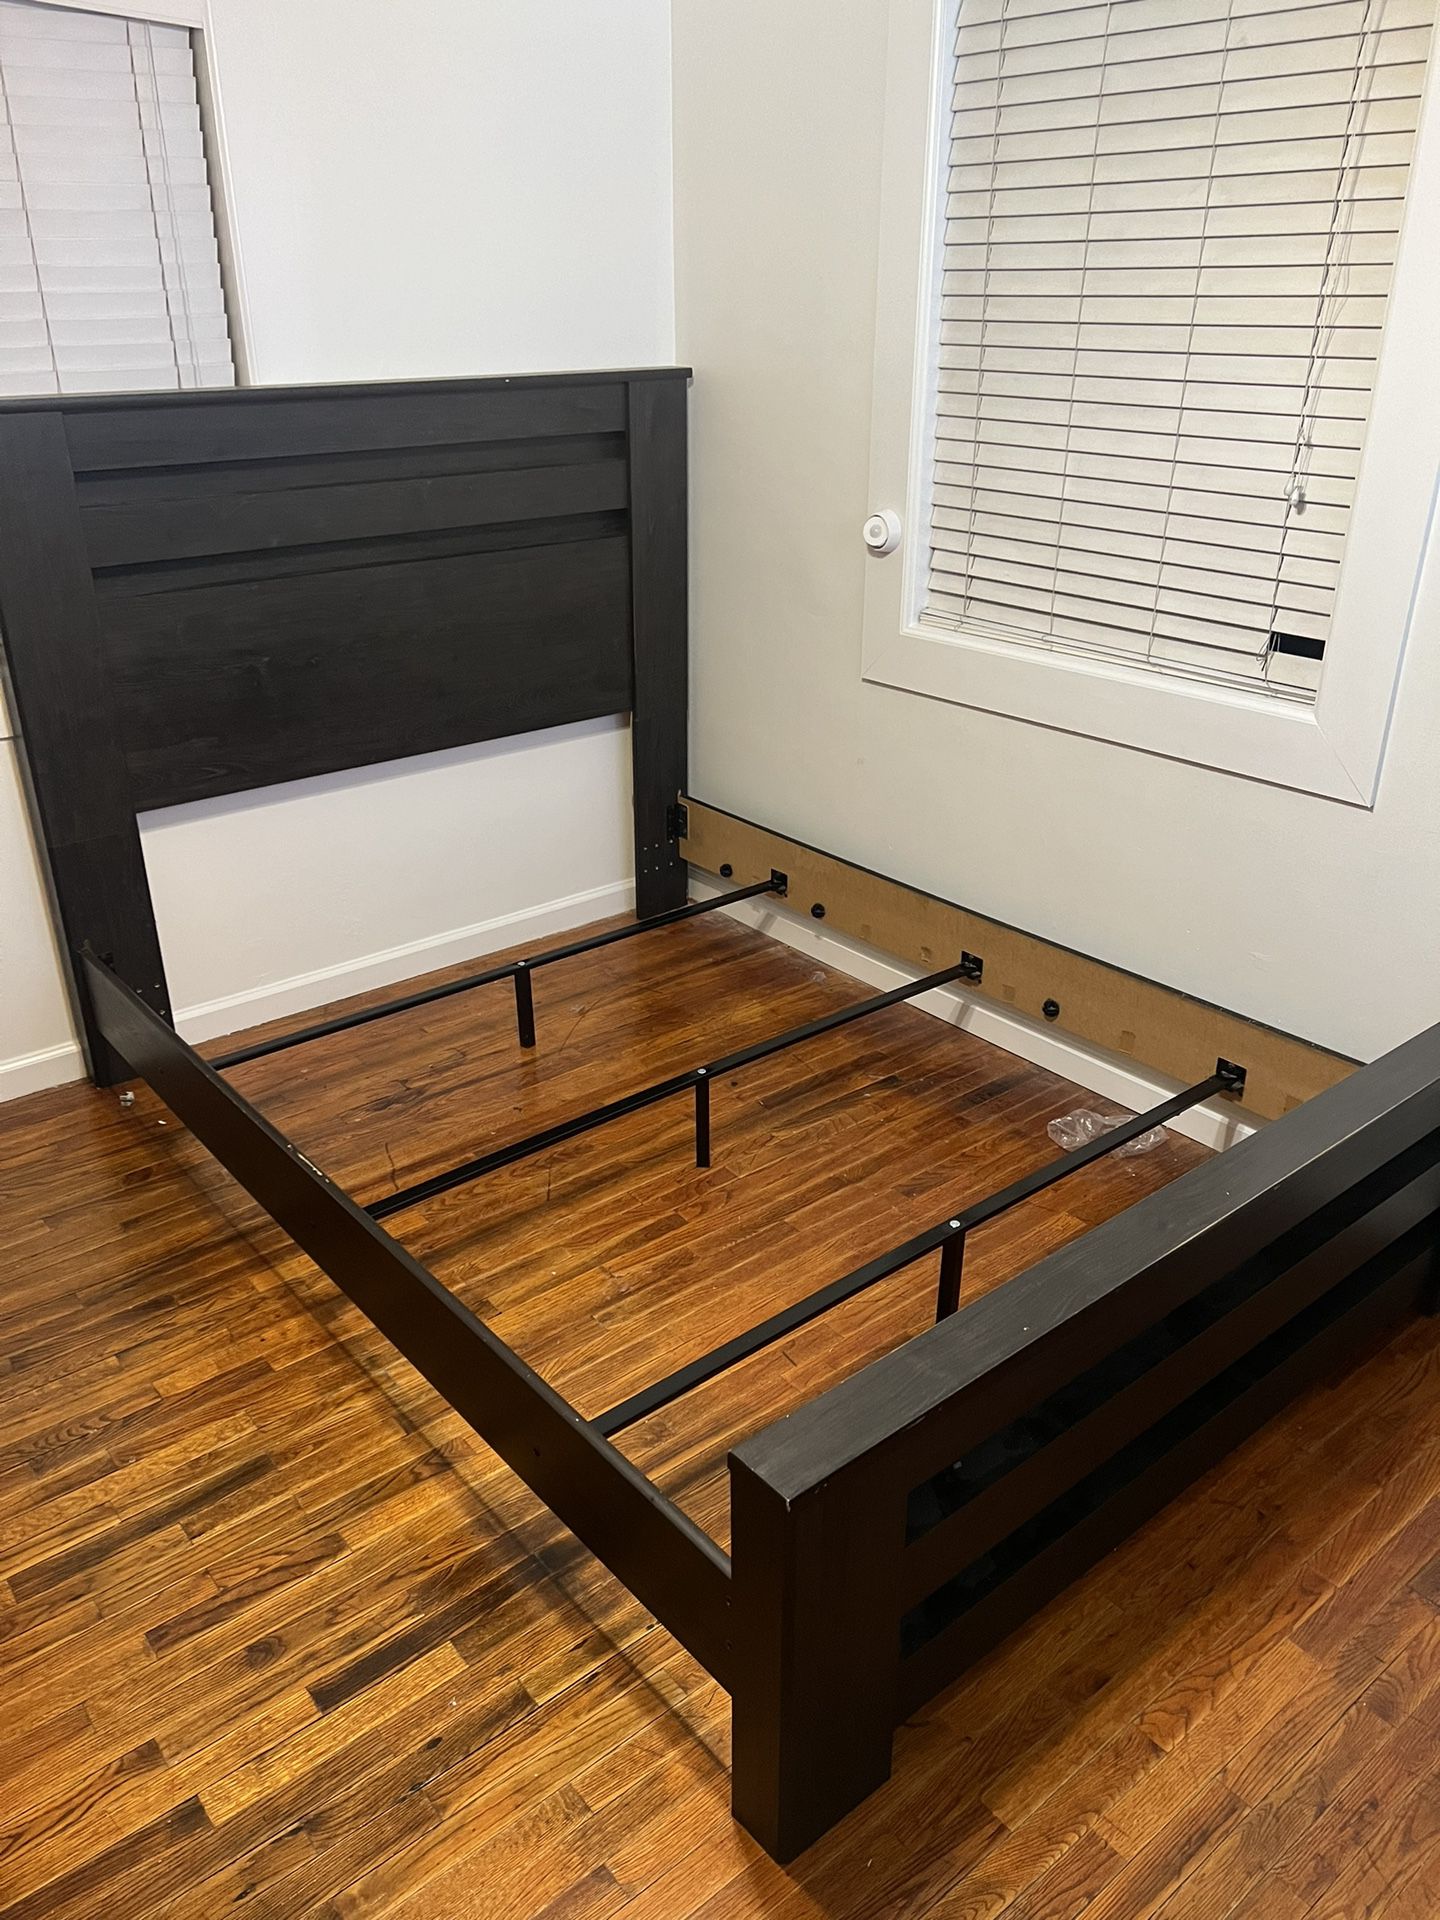 Queen bed frame 